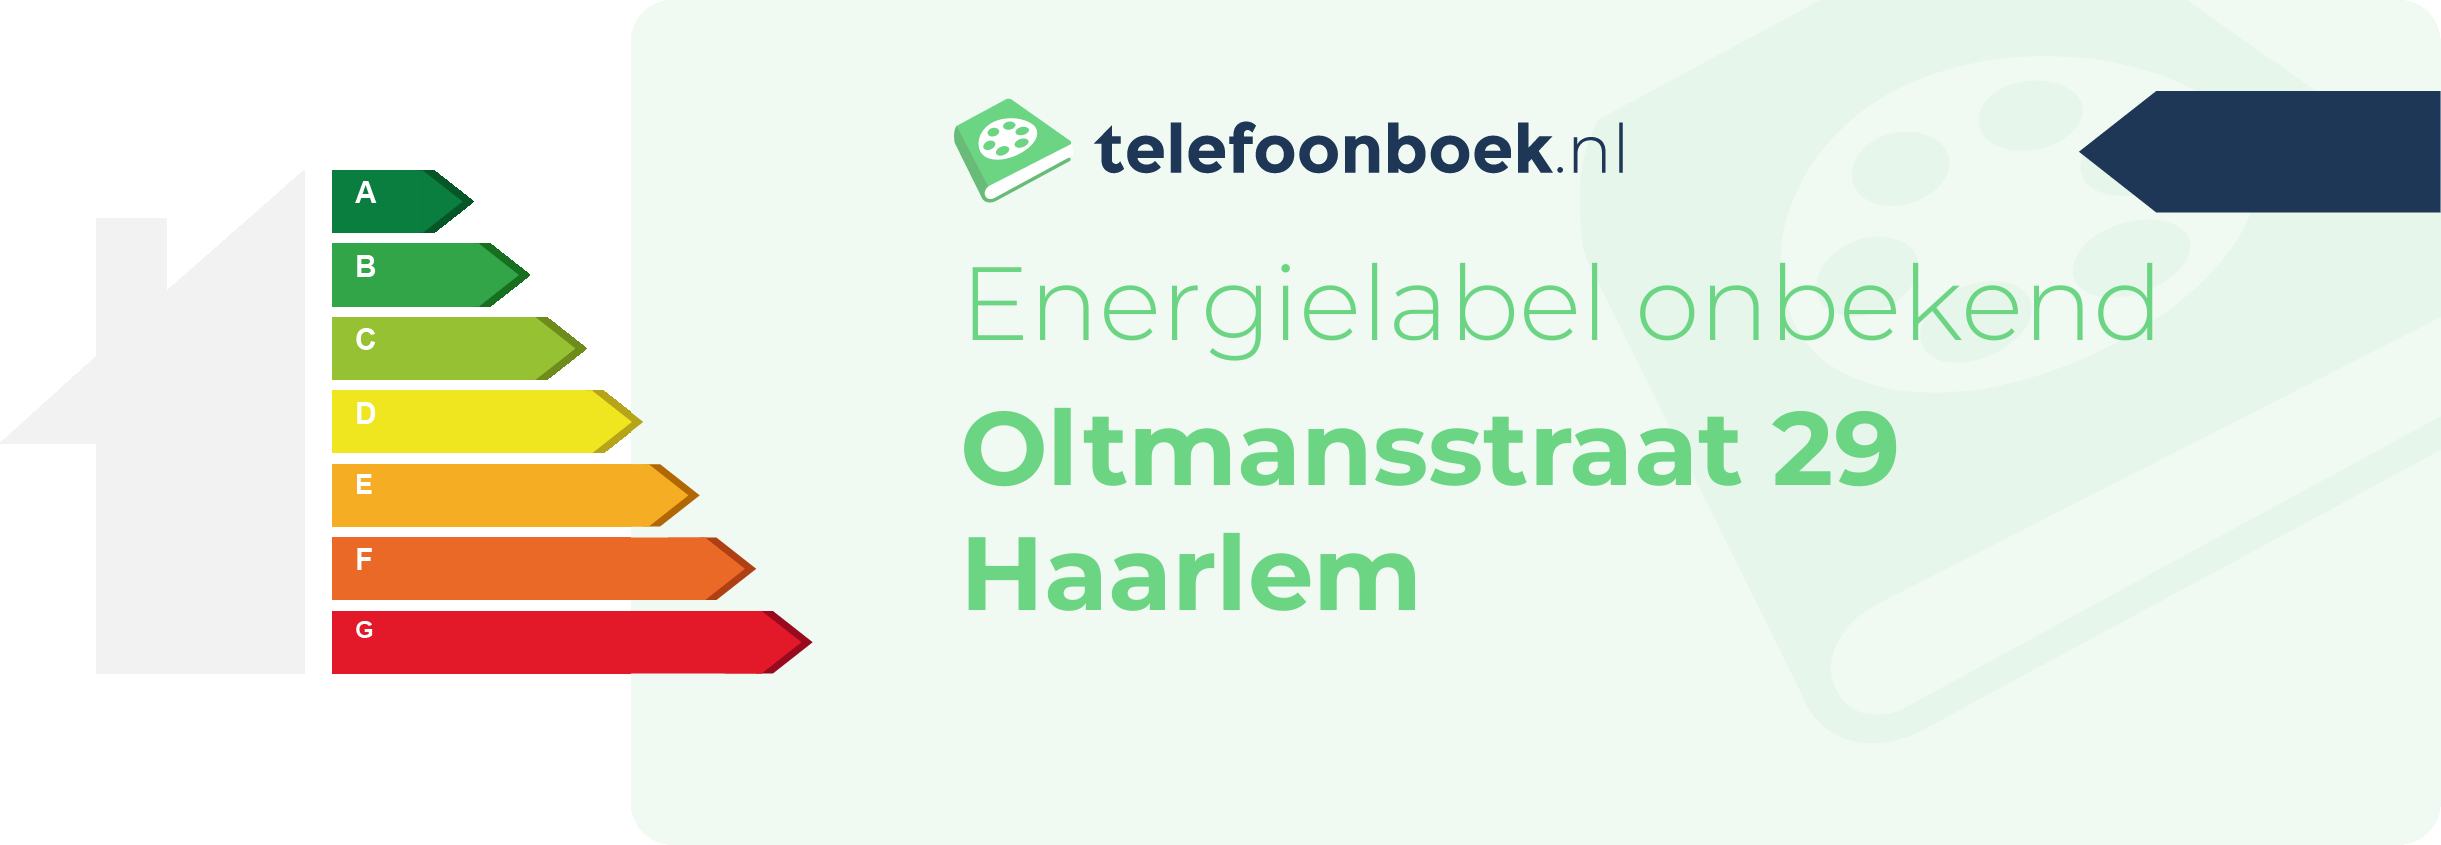 Energielabel Oltmansstraat 29 Haarlem